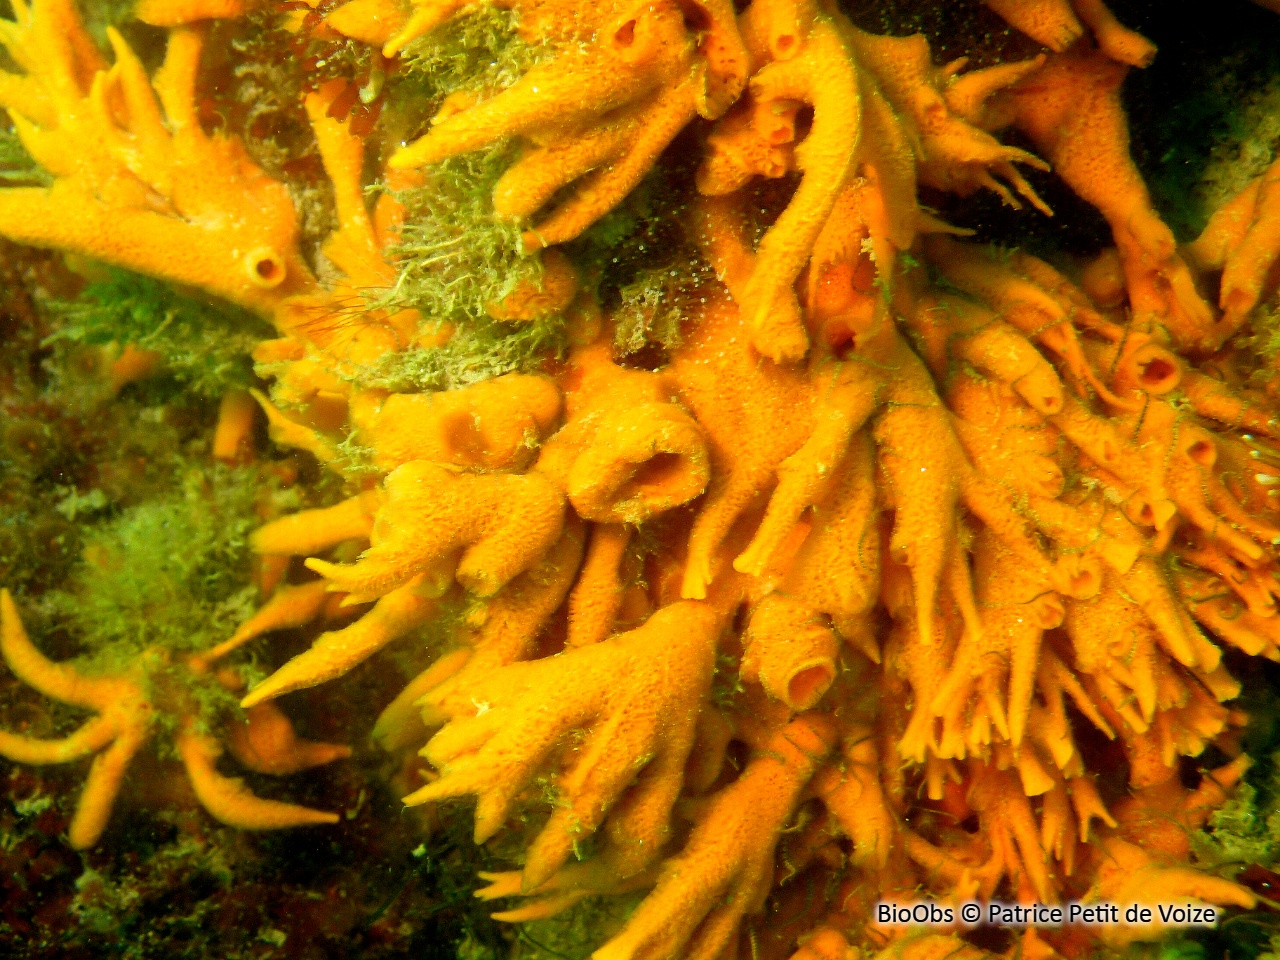 Eponge mousse de carotte - Amphilectus fucorum - Patrice Petit de Voize - BioObs